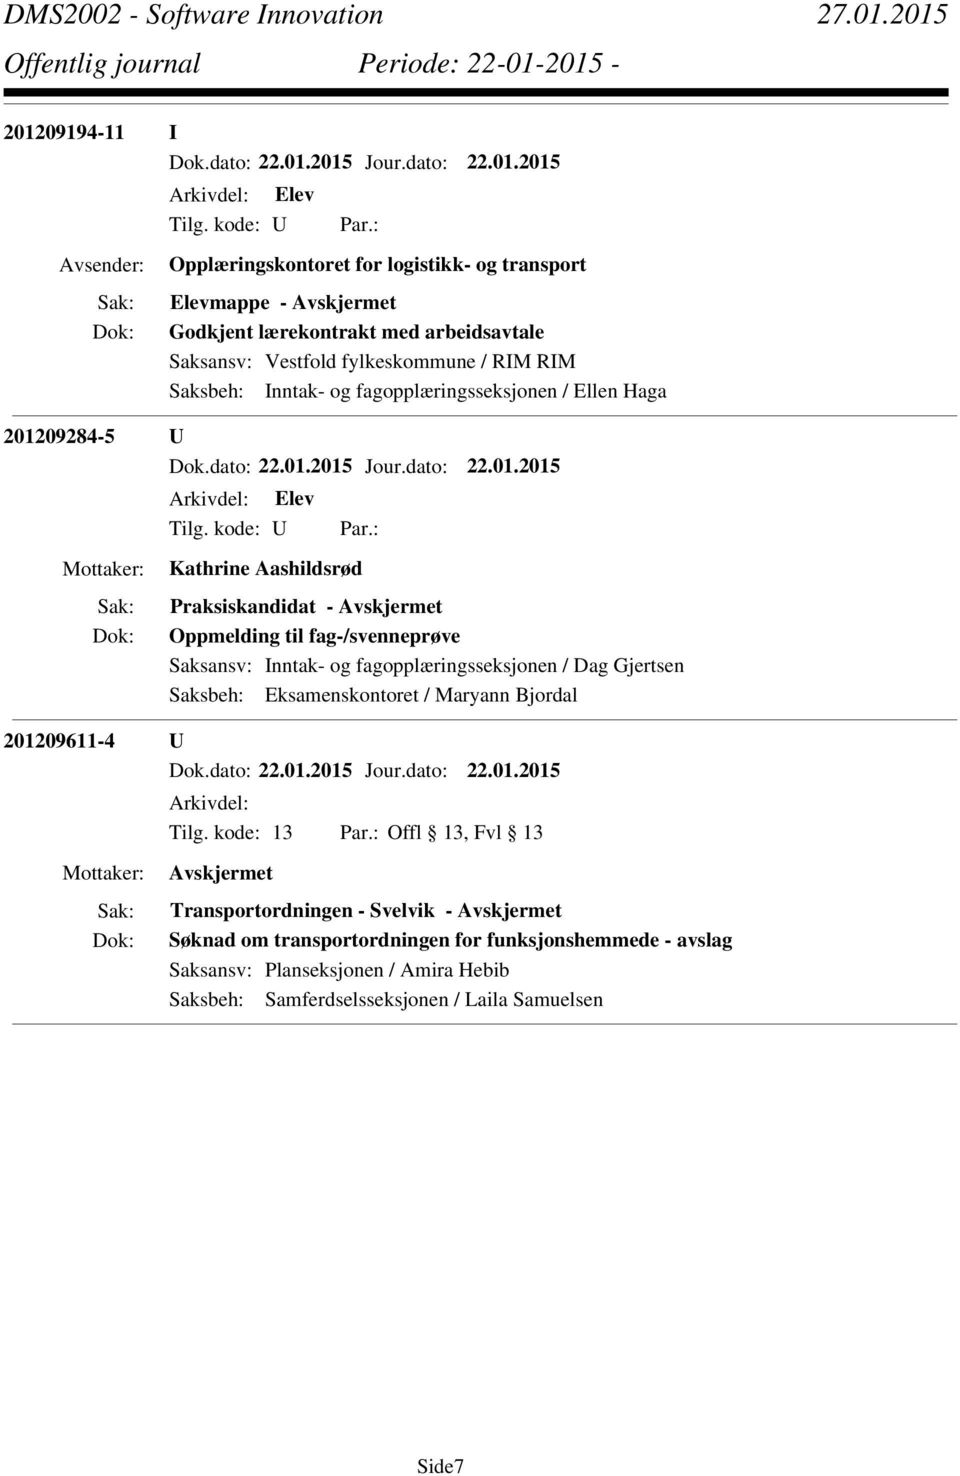 Oppmelding til fag-/svenneprøve 201209611-4 U Arkivdel: Transportordningen - Svelvik - Søknad om